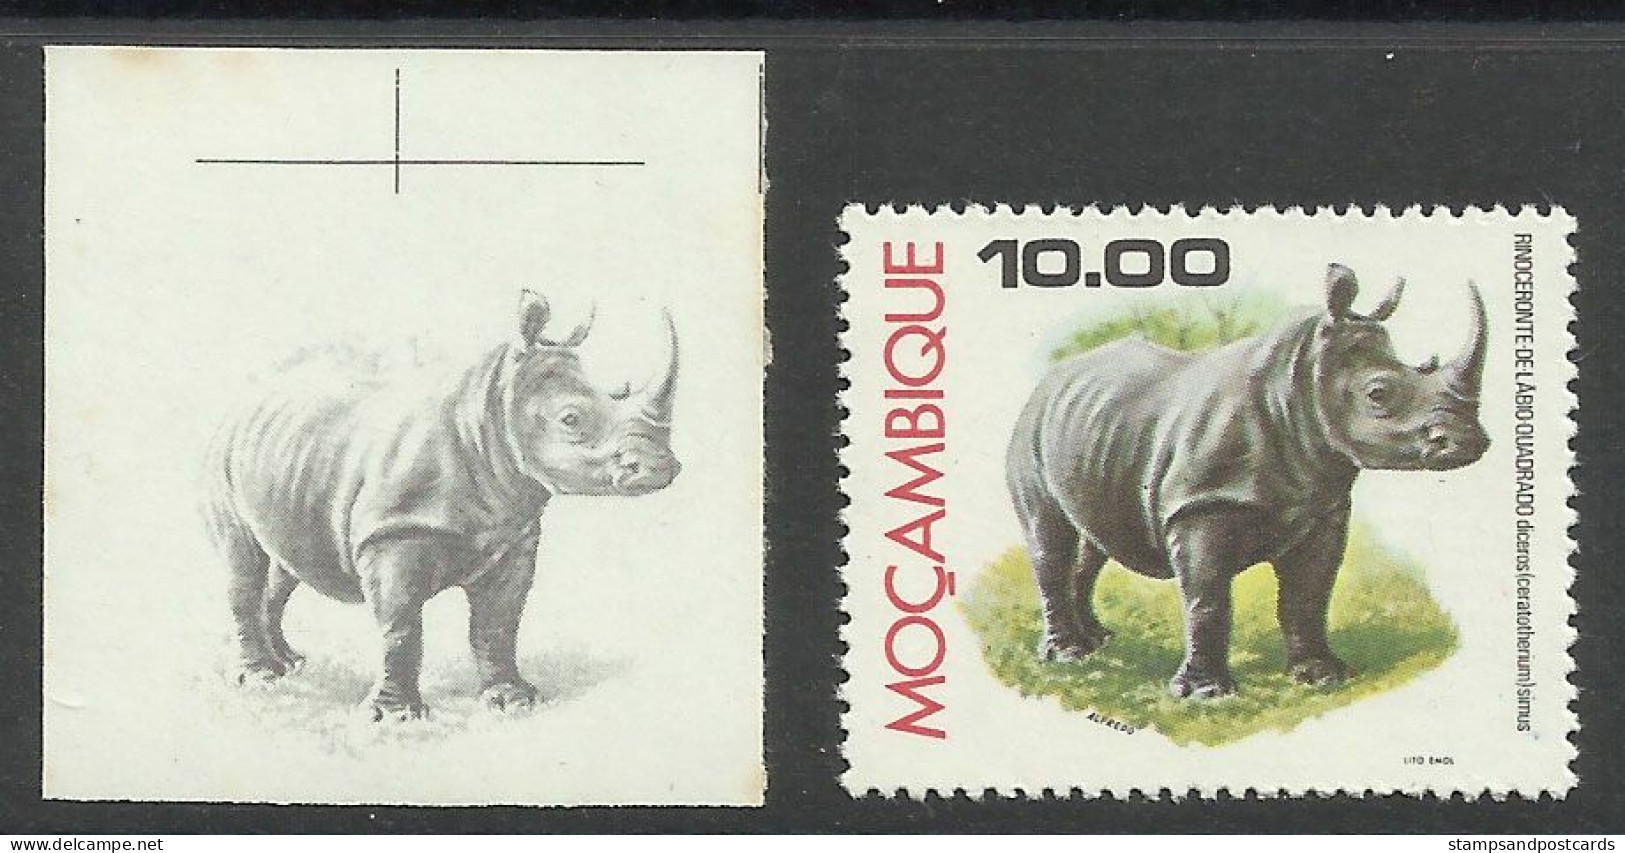 Mozambique 1976 Preuve De Couleur Rhinocéros Moçambique 1976 Color Proof Rhino Rhinocerus - Neushoorn